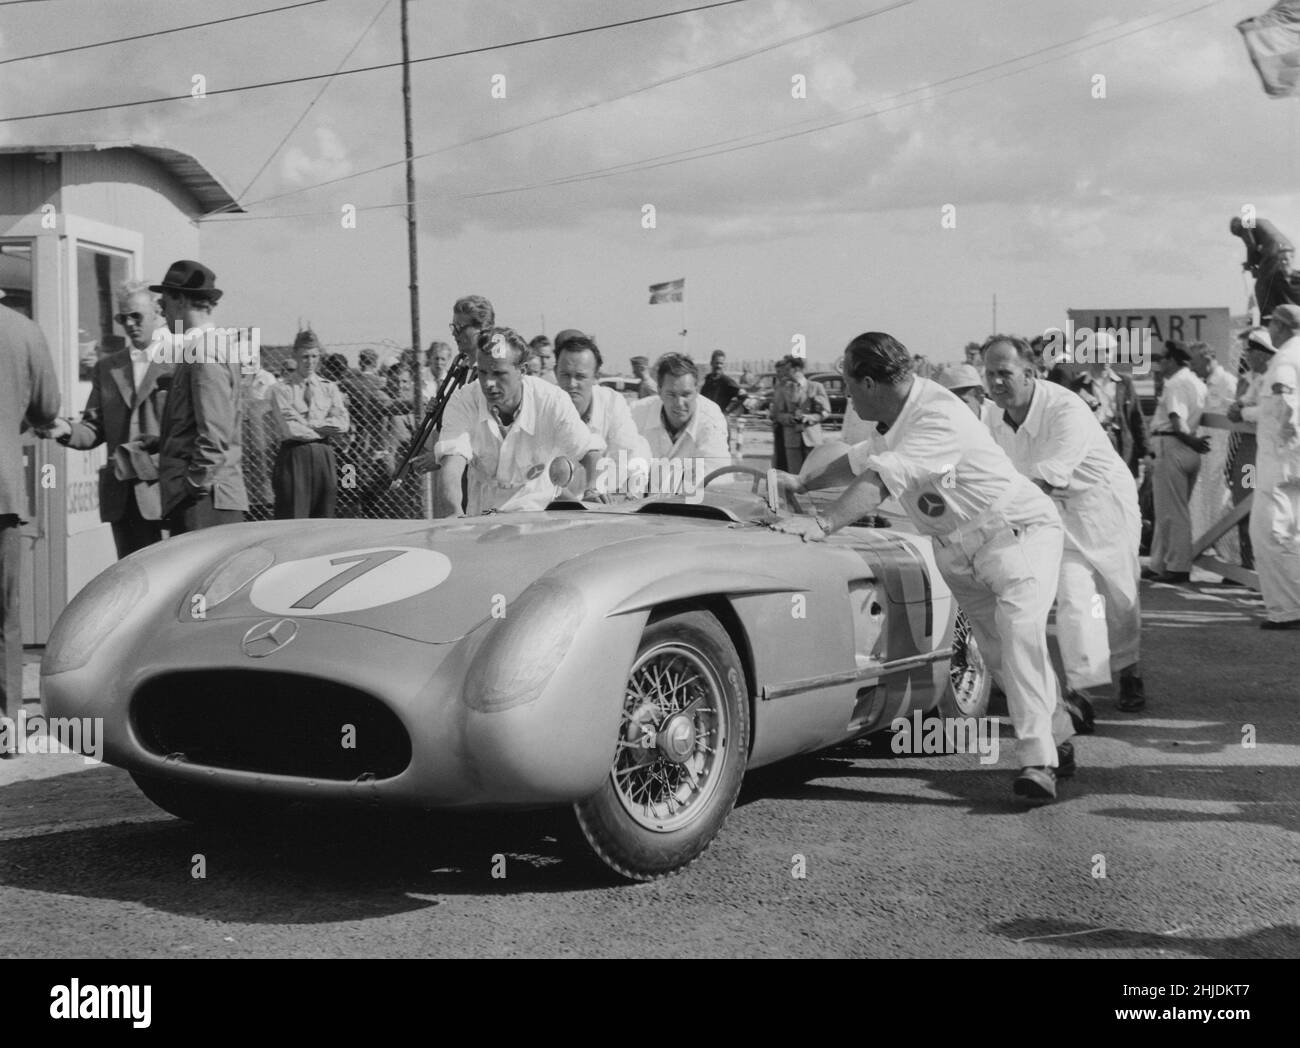 Auto da corsa del 1950s. Il team di meccanici Mercedes spinge una vettura da corsa Mercedes durante una gara del Gran premio 1955 nella città svedese Kristianstad. Foto Stock